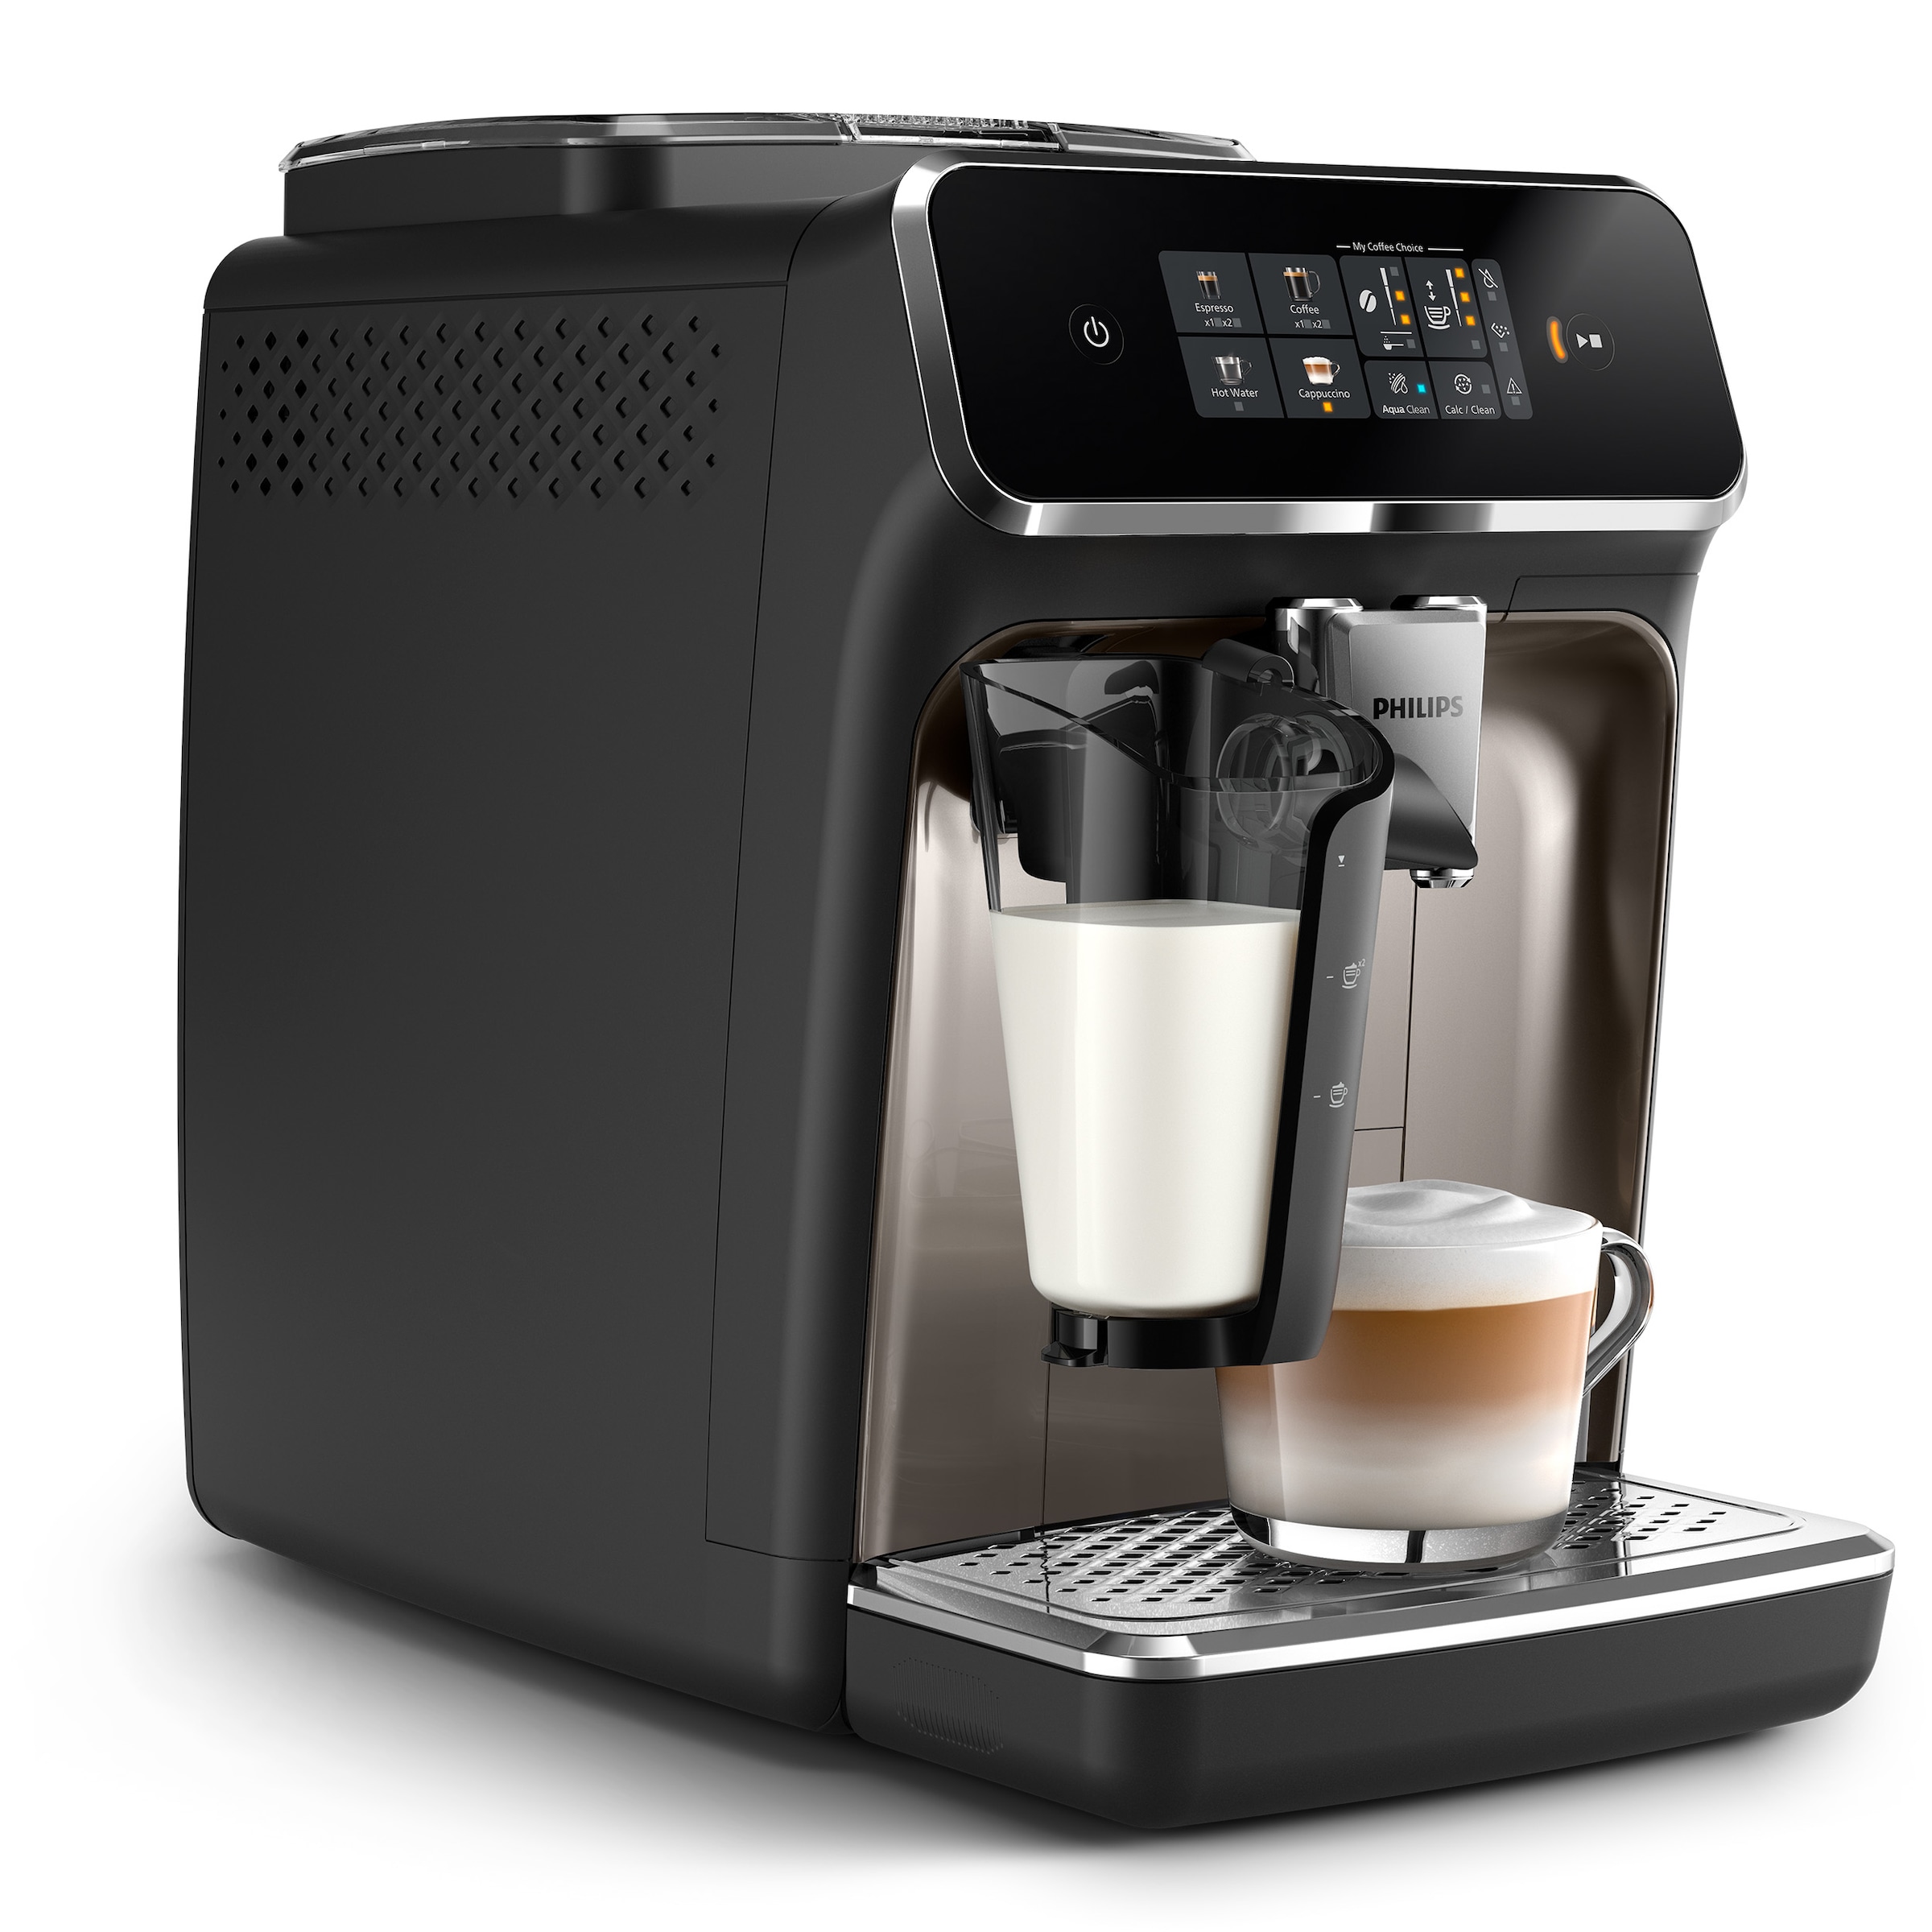 Philips Kaffeevollautomat »EP2336/40 2300 Series«, 4 Kaffeespezialitäten, mit LatteGo-Milchsystem, Schwarz verchromt